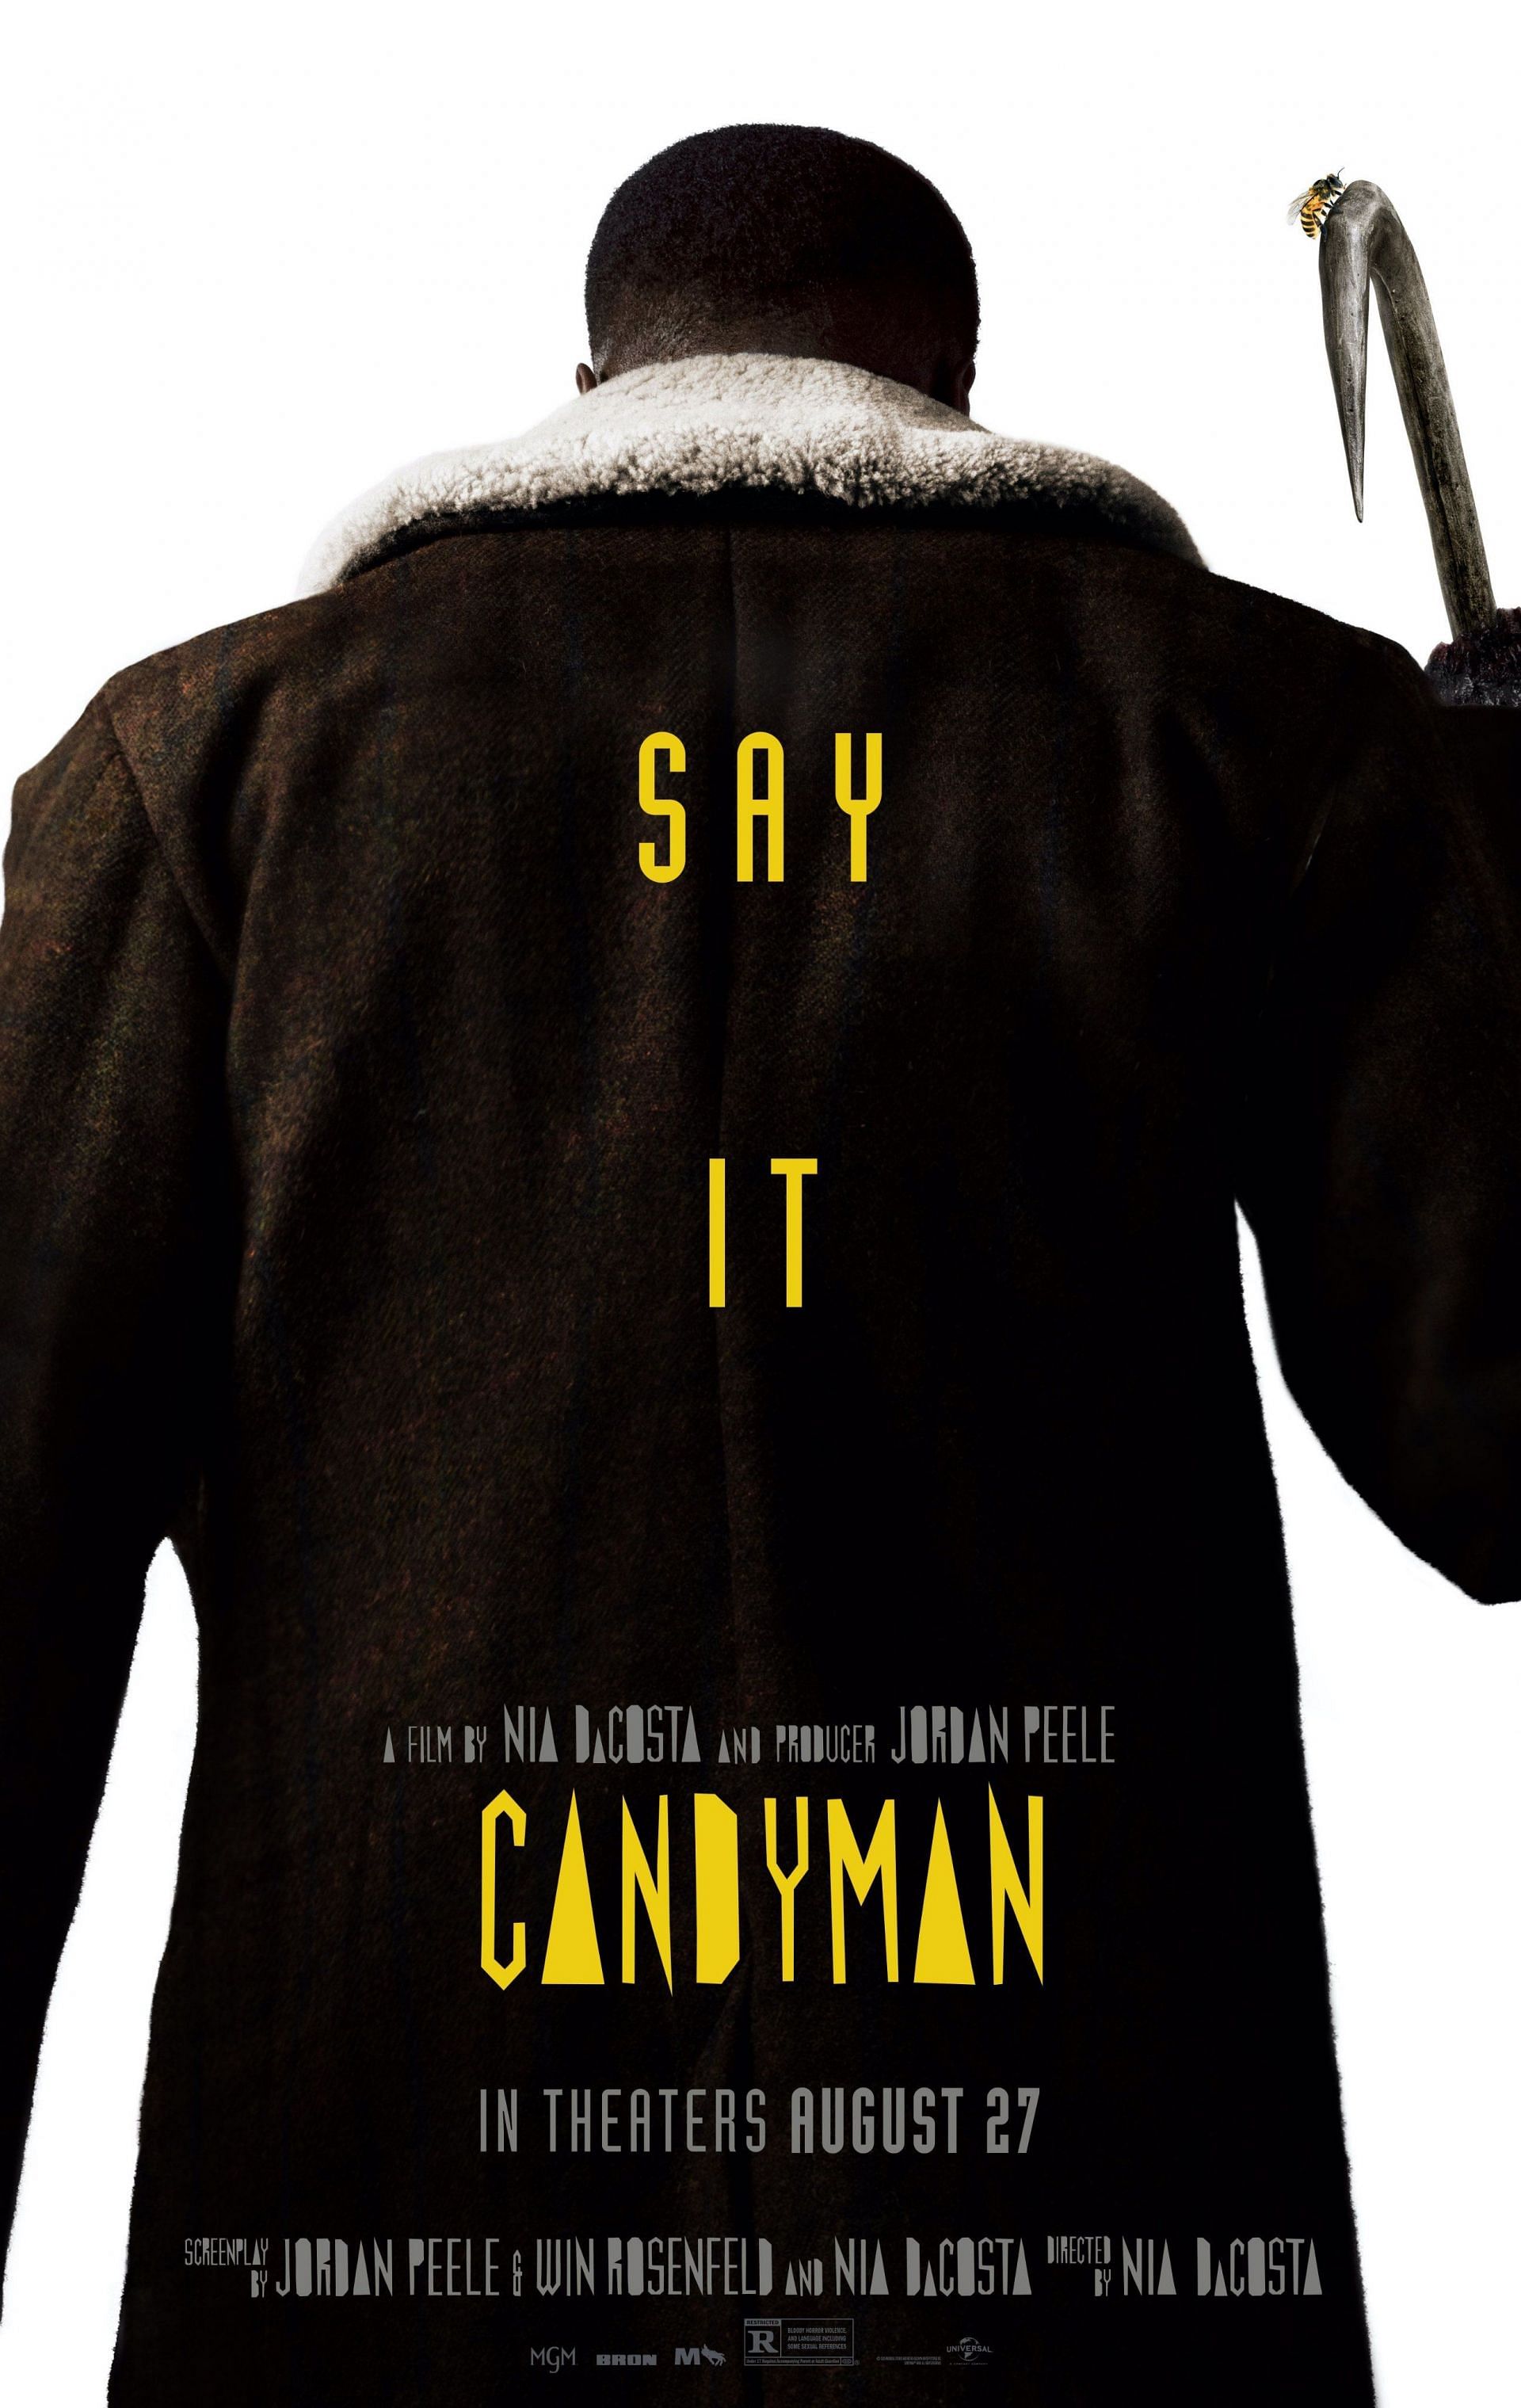 Candyman (Image via Universal)